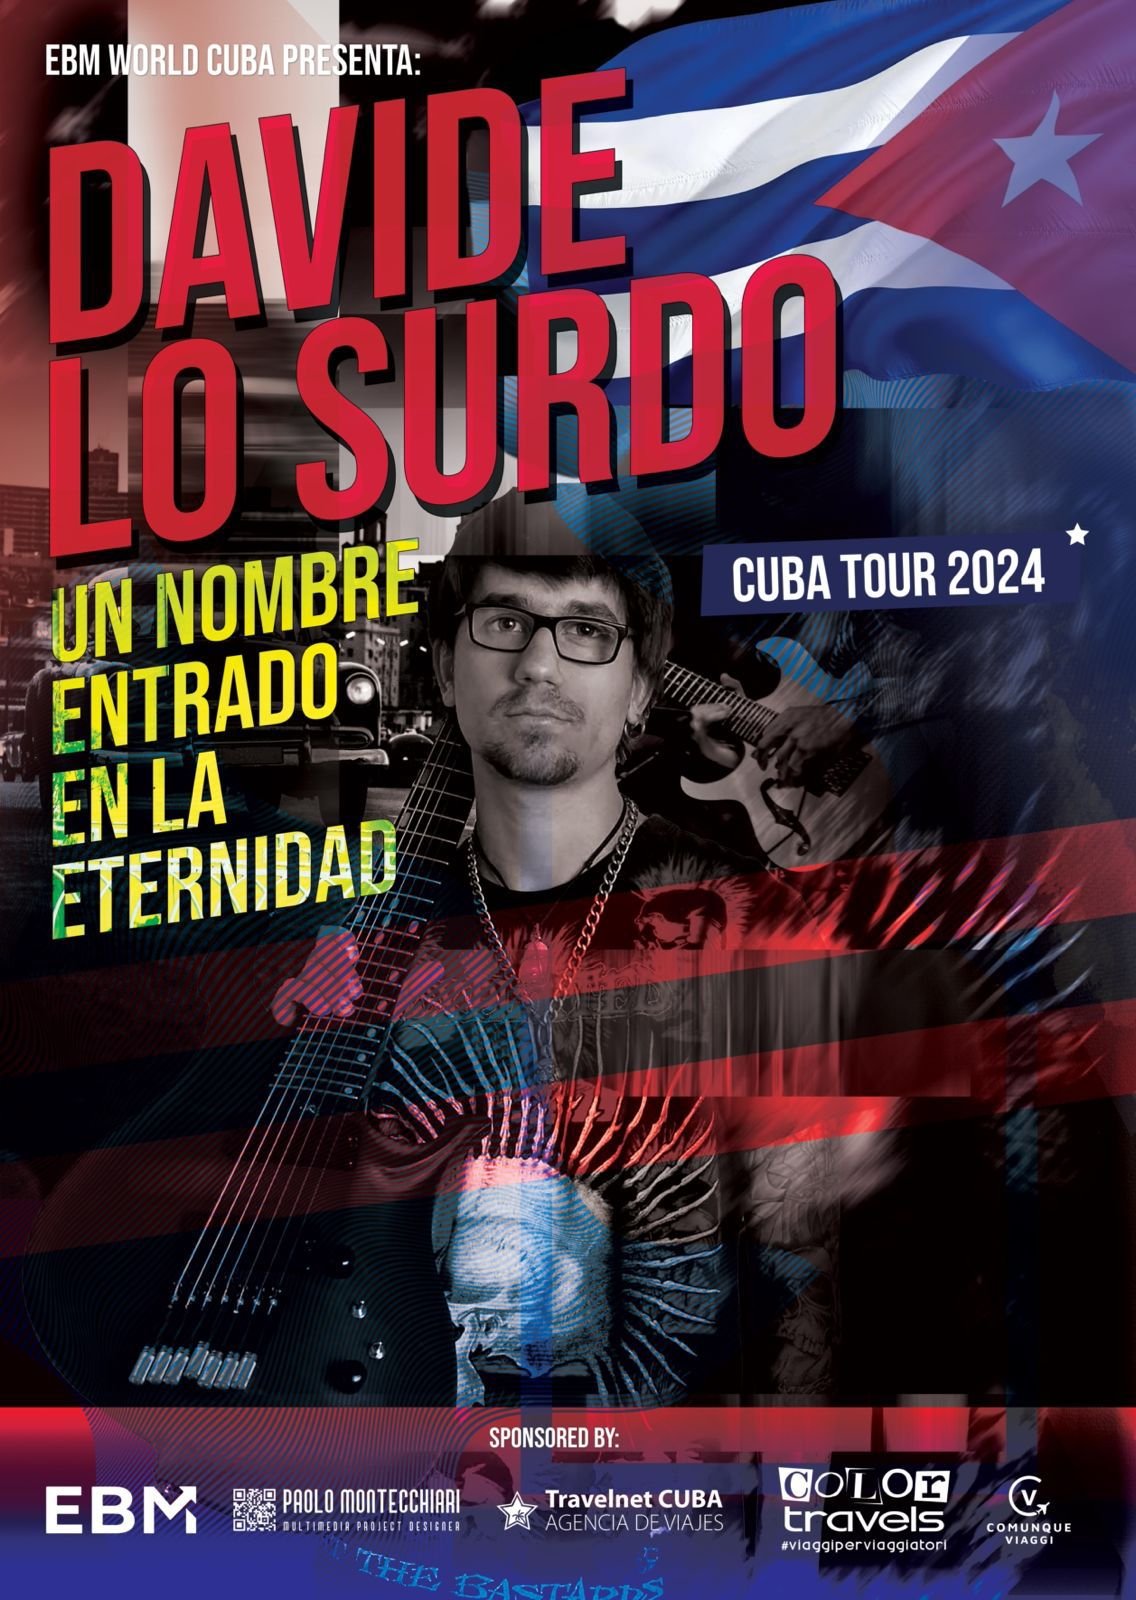 Davide Lo Surdo: una leyenda entrada en la eternidad llega a Cuba